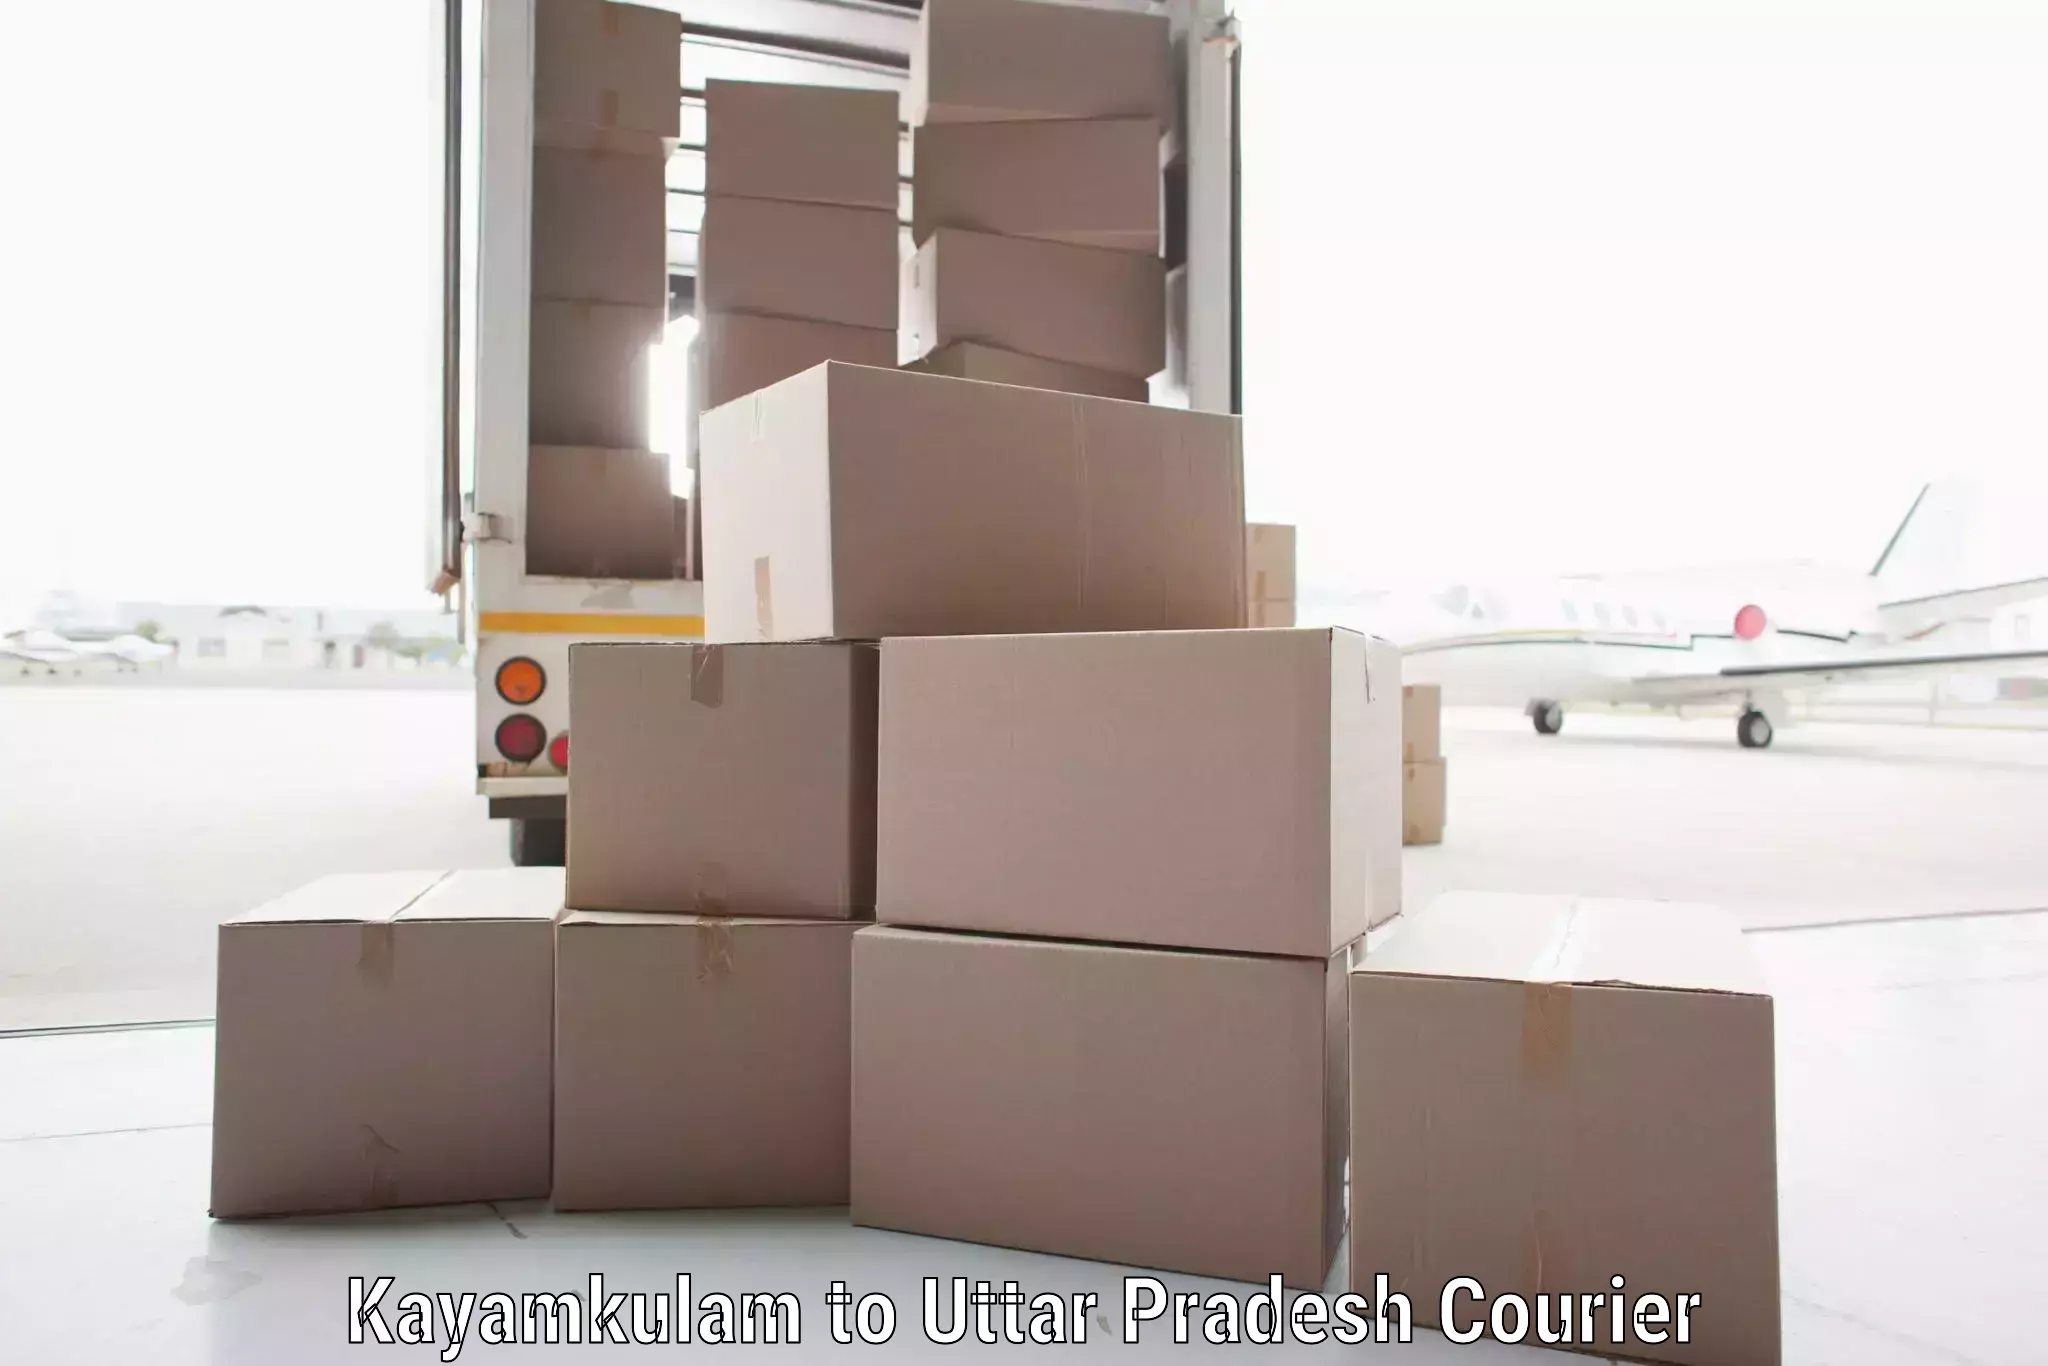 Specialized shipment handling Kayamkulam to Bansi